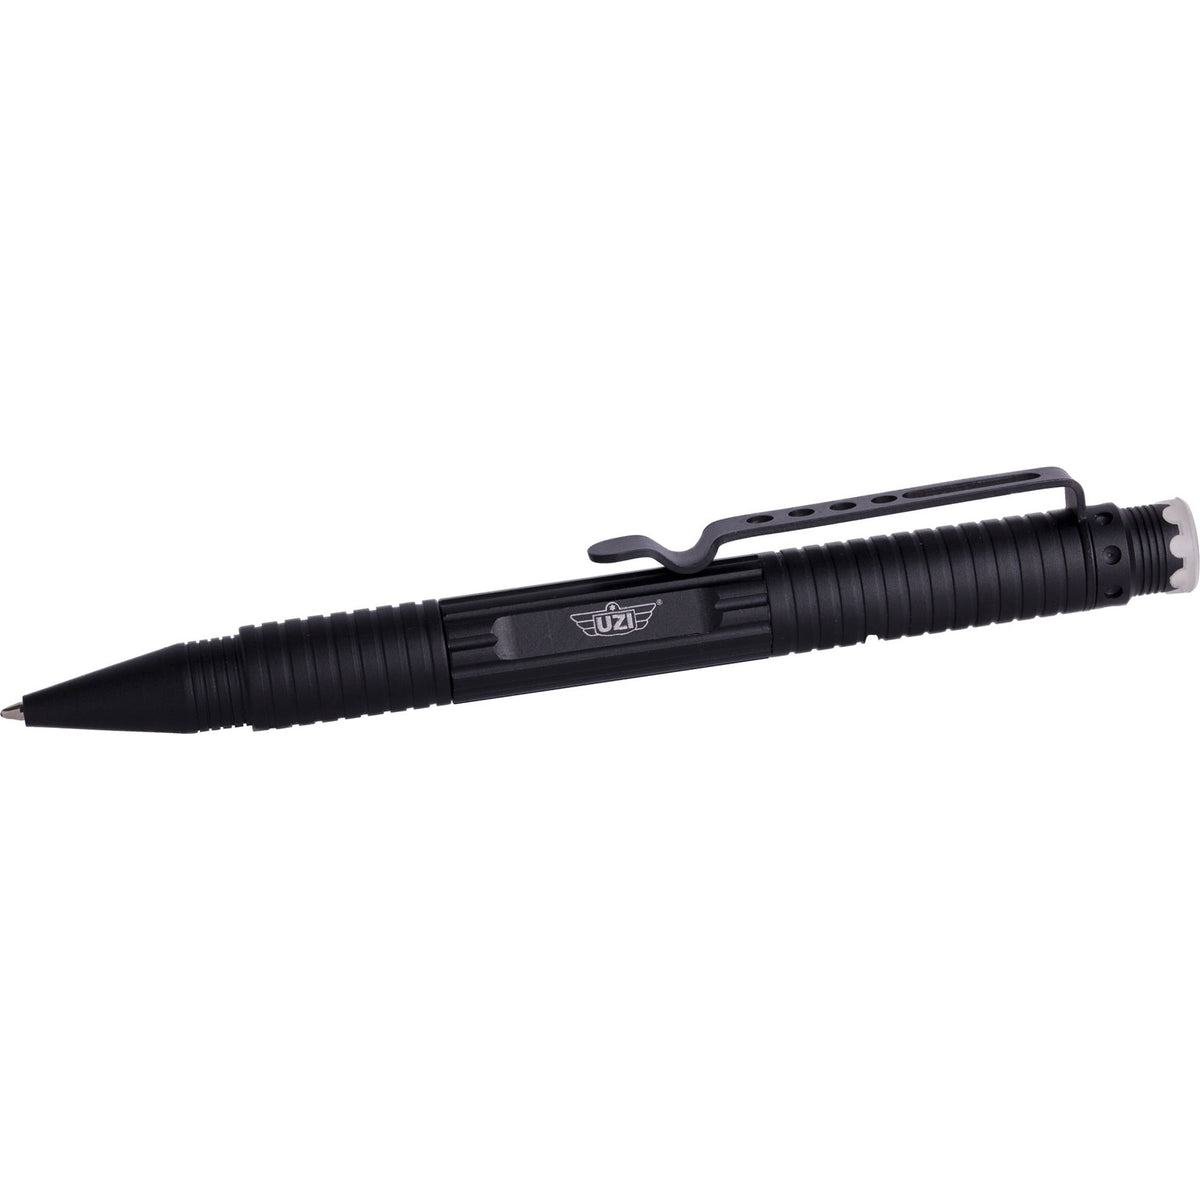 UZI Tactical Pen - Black- DNA catcher and handcuff key